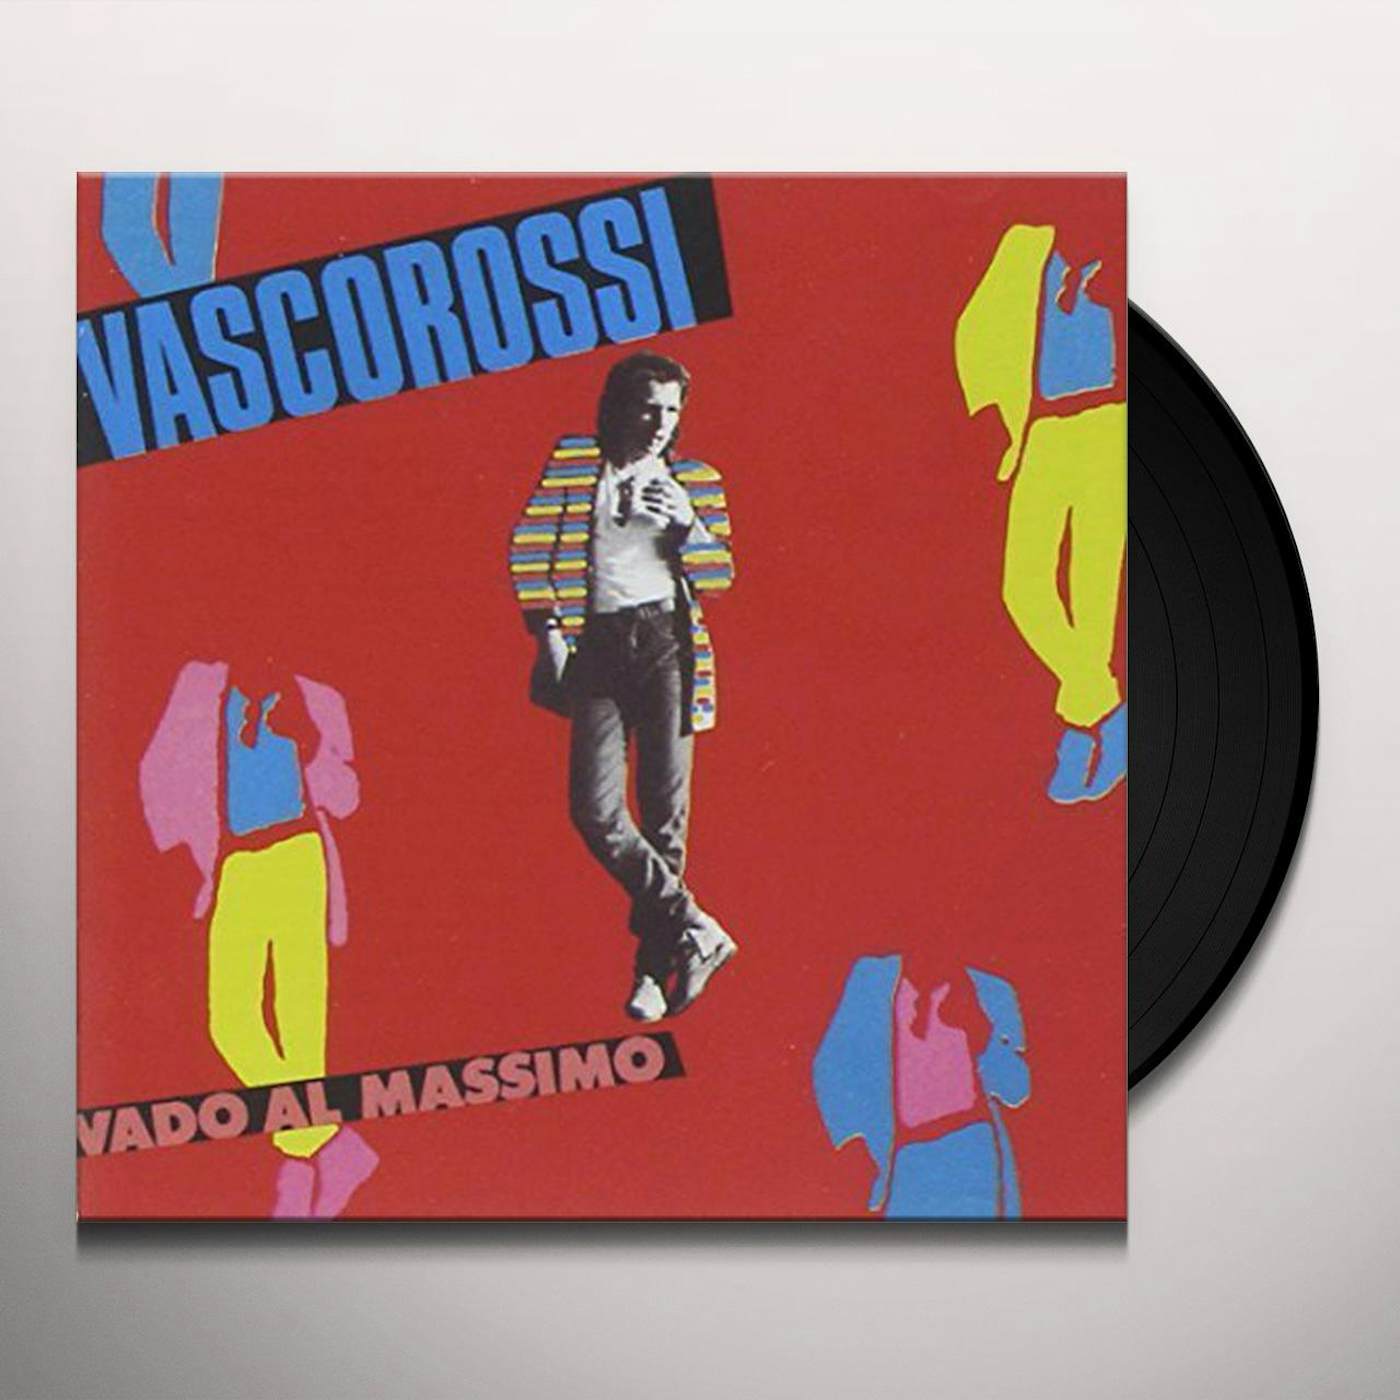 Vinile Vasco Rossi 4.0 - Vasco Rossi - Vinile Shop